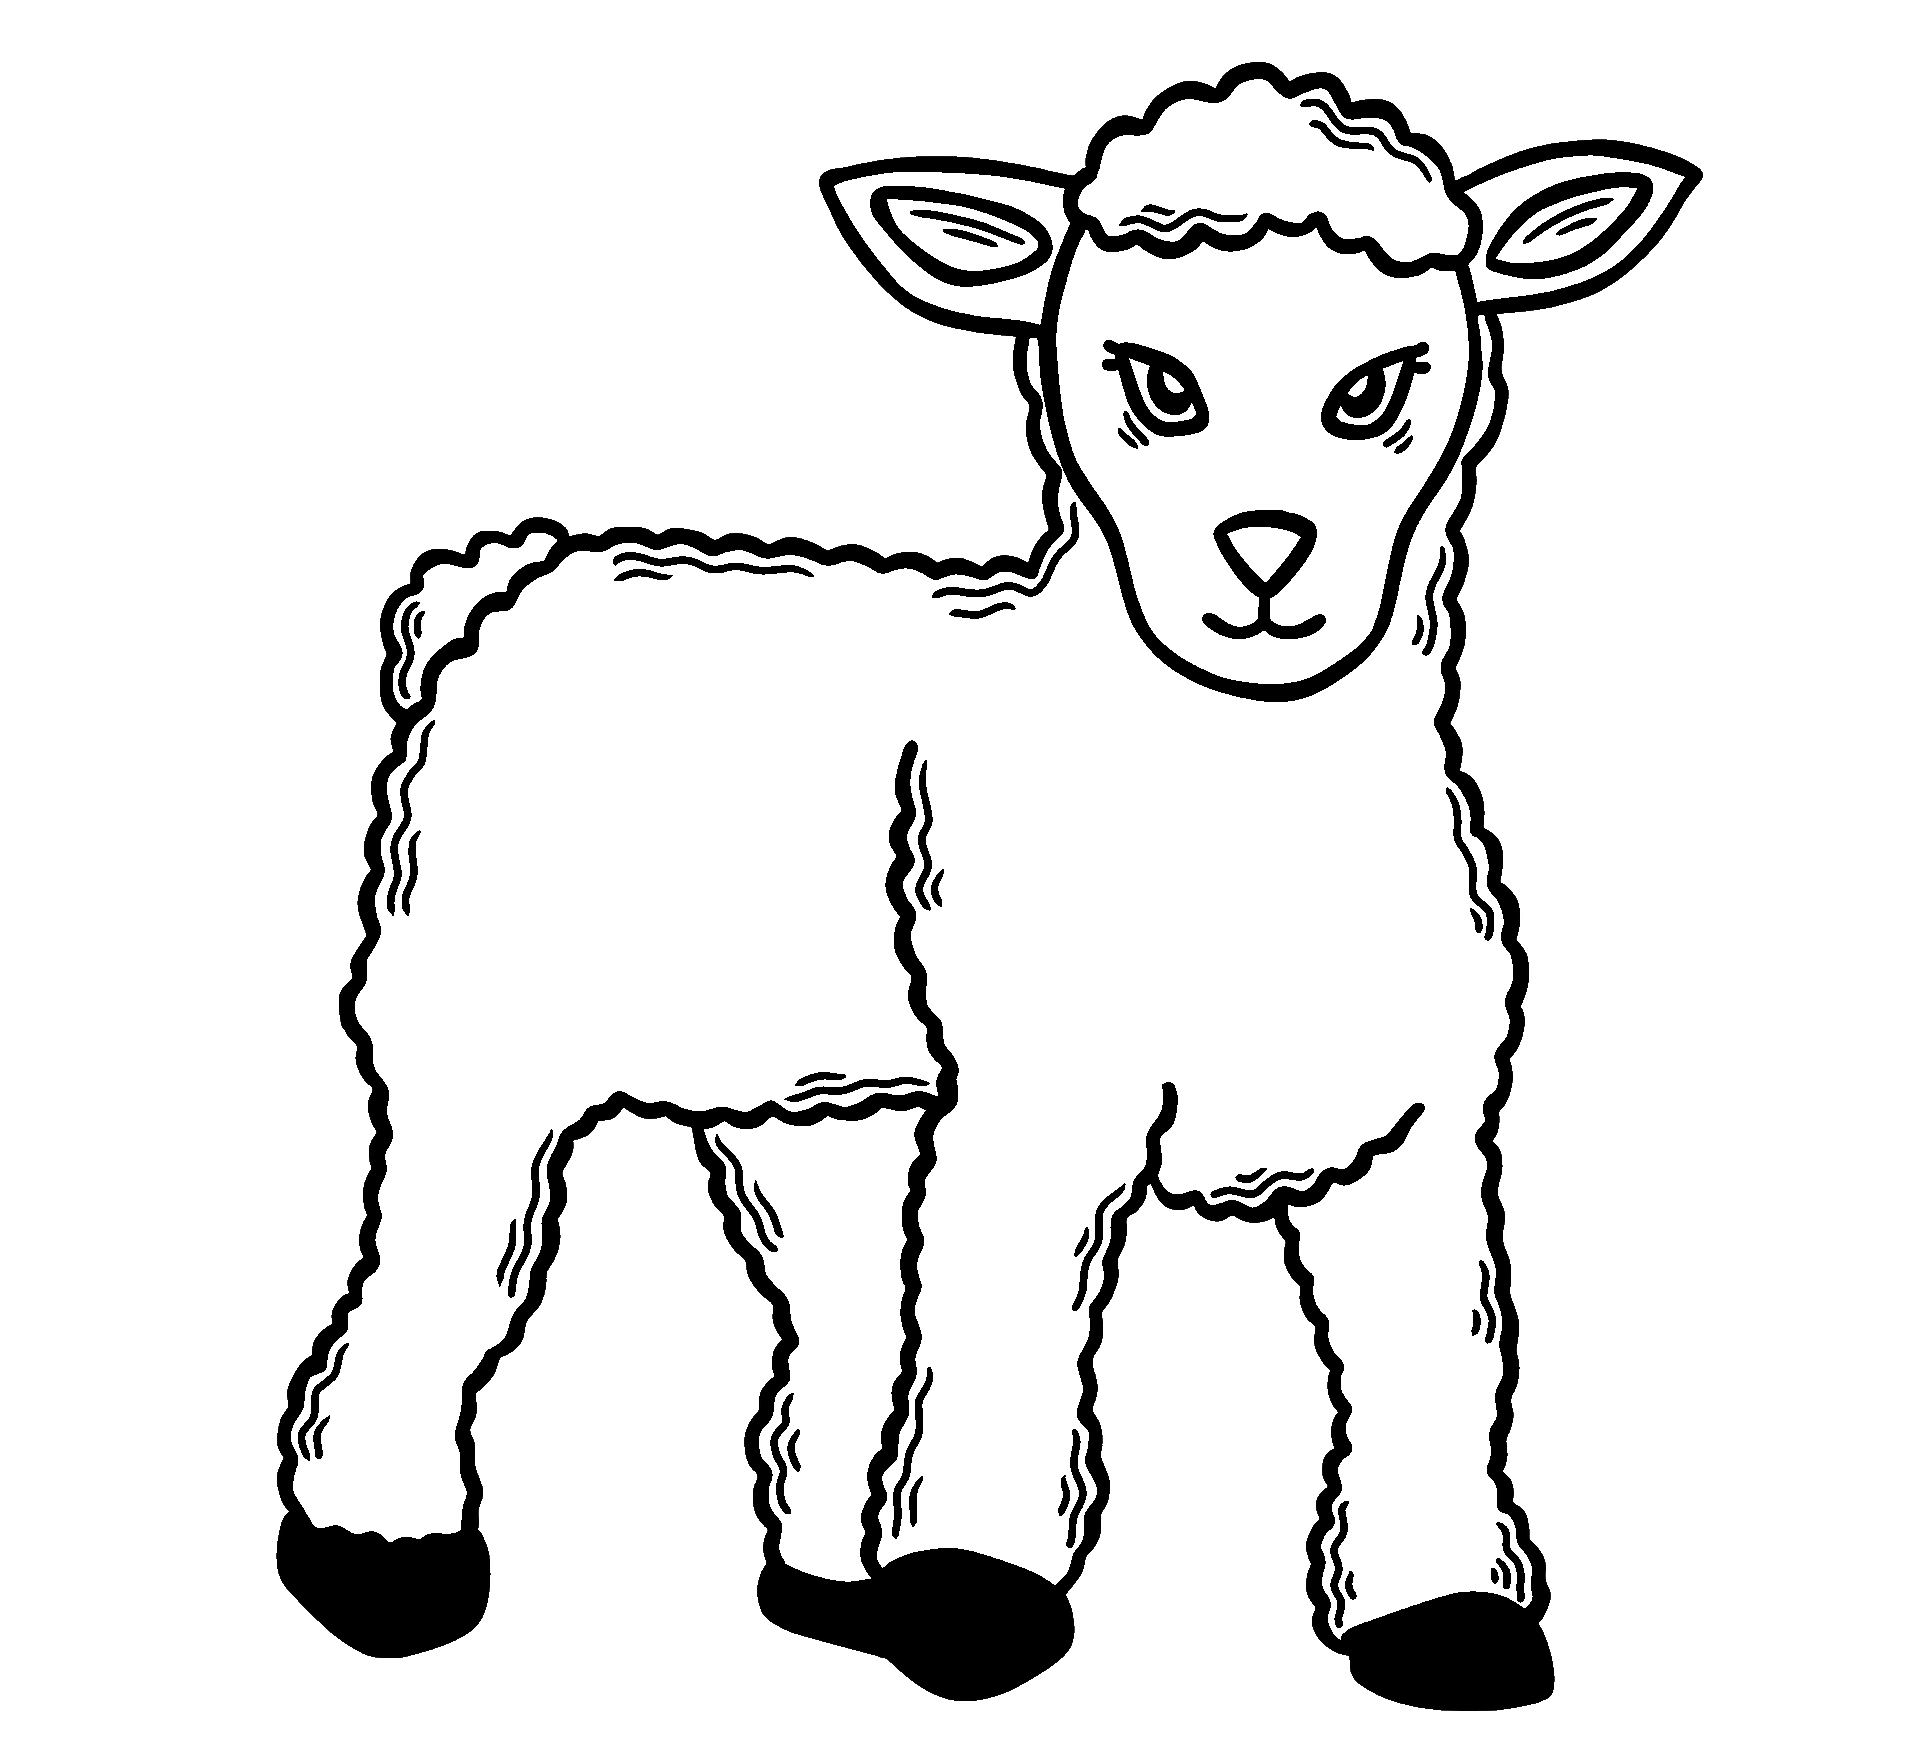 Disegno da colorare di una pecora